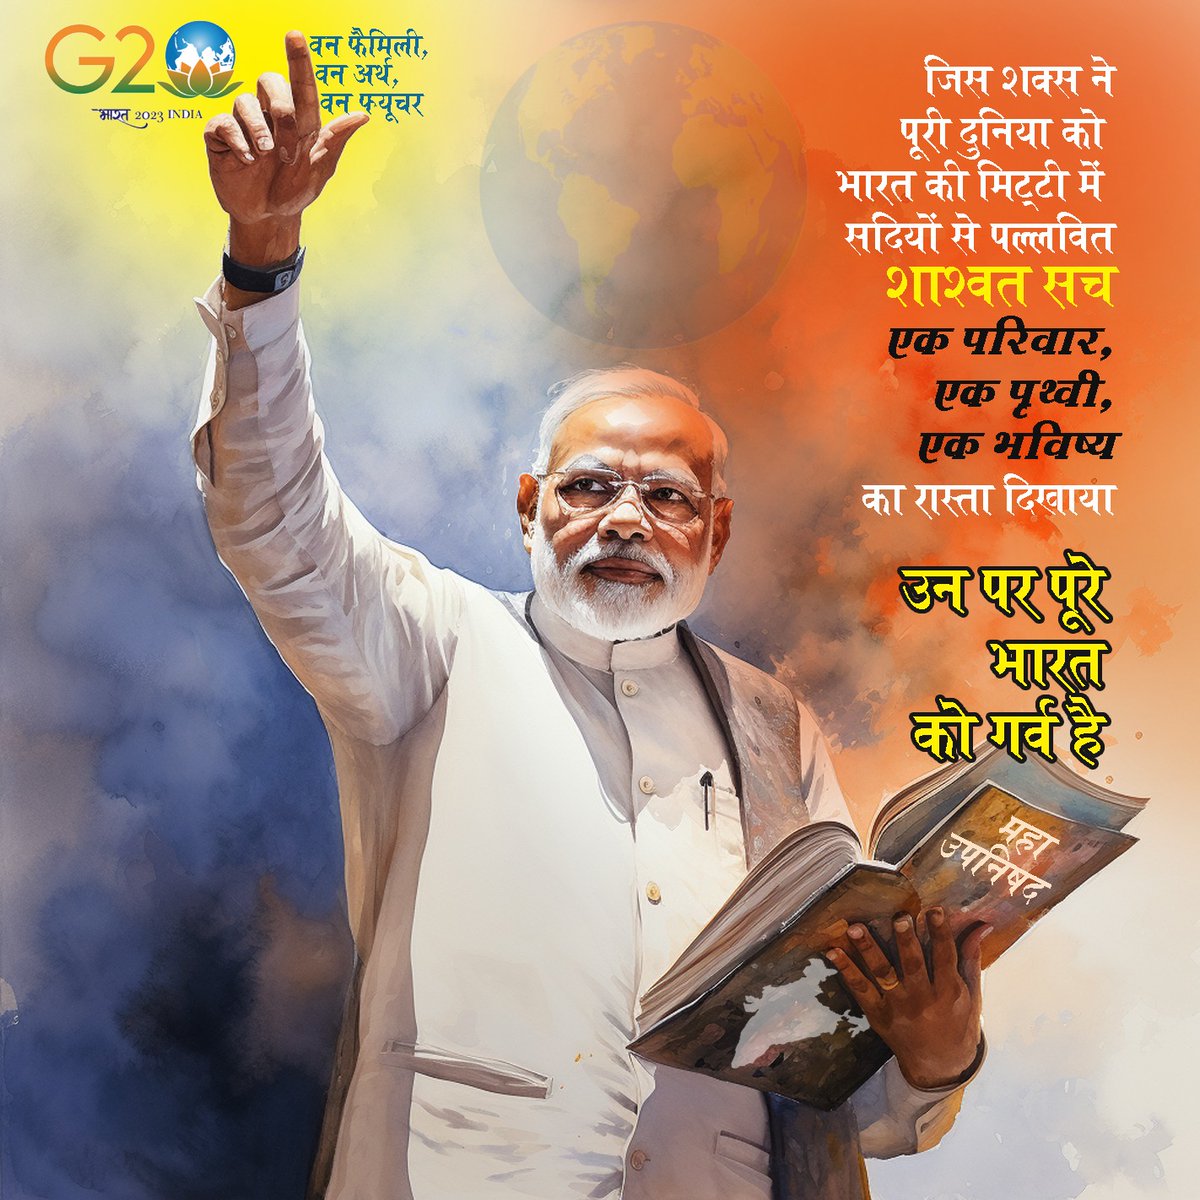 जिस शख्स ने पूरी दुनिया को भारत की मिट्टी में सदियों से पल्लवित शाश्वत सच 'एक परिवार, एक पृथ्वी, एक भविष्य' का रास्ता दिखाया, उन पर पूरे भारत को गर्व है...

#G20summit
#G20india
#indiahostingG20
#G20delhi